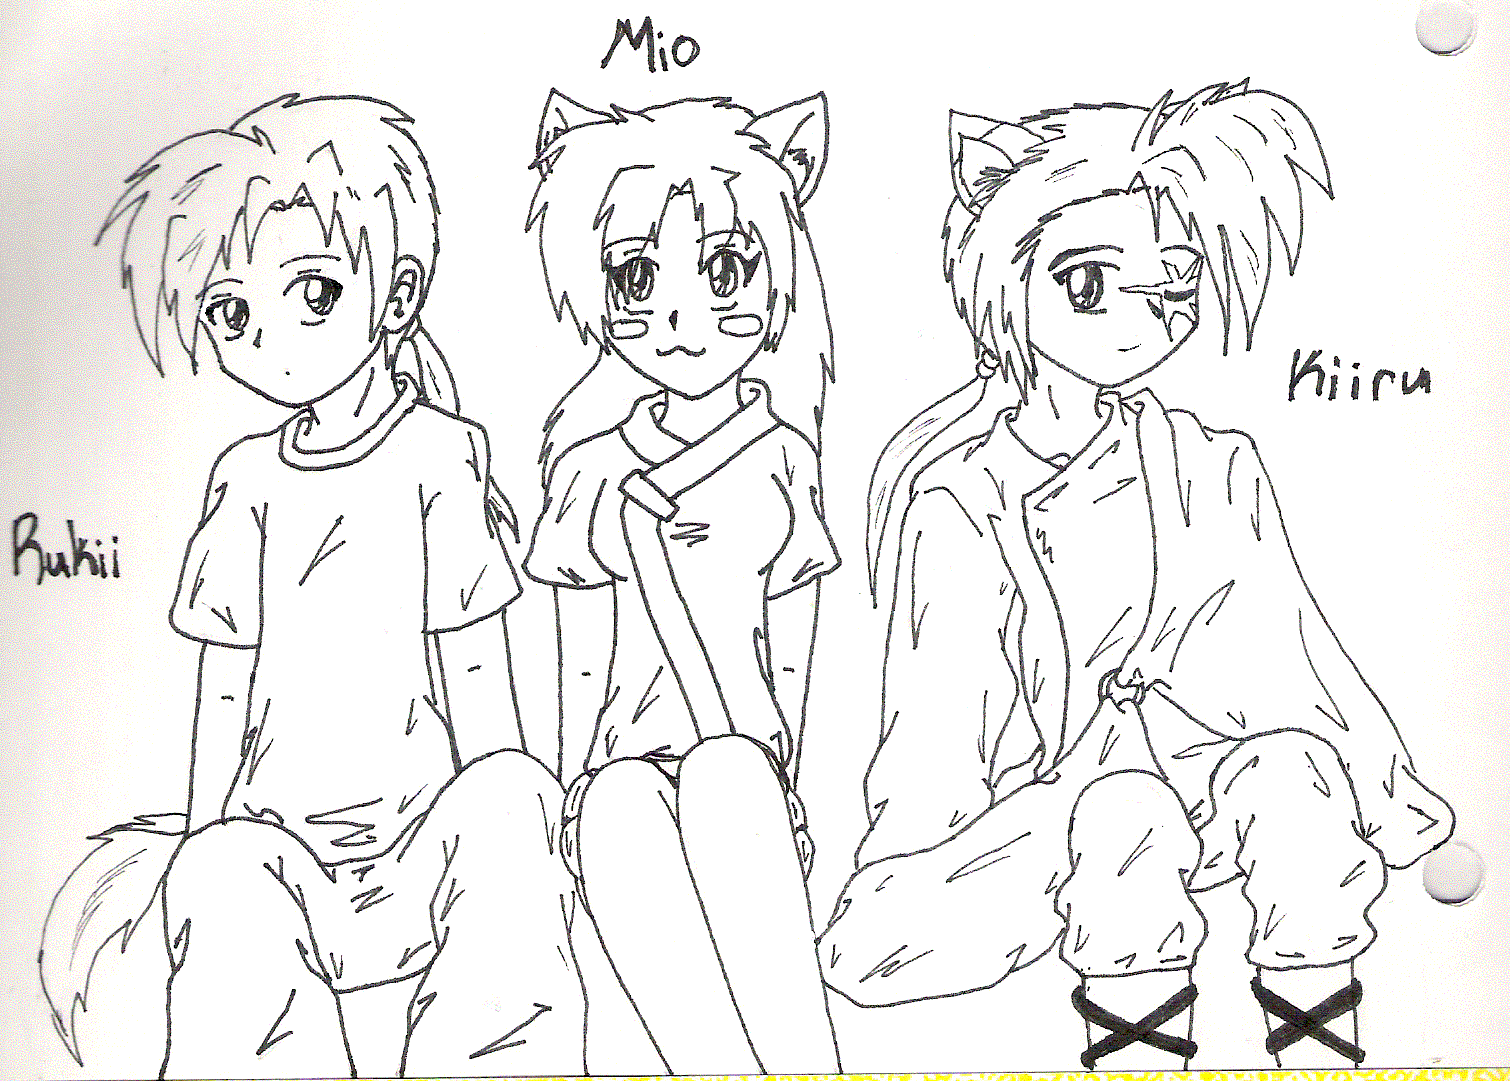 Rukii, Mio, and Kiiru O_O by Kamaya_the_Cat